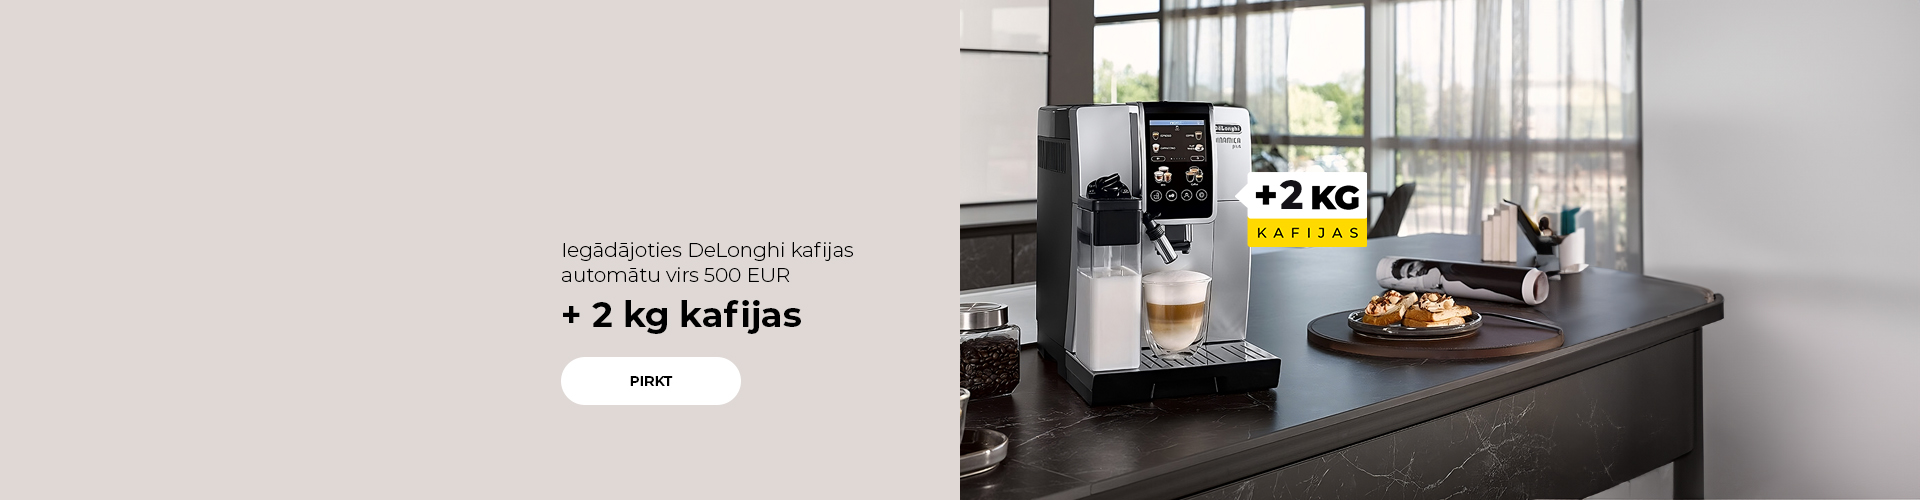 Iegādājoties DeLonghi kafijas automātu virs 500 EUR + 2 kg kafijas